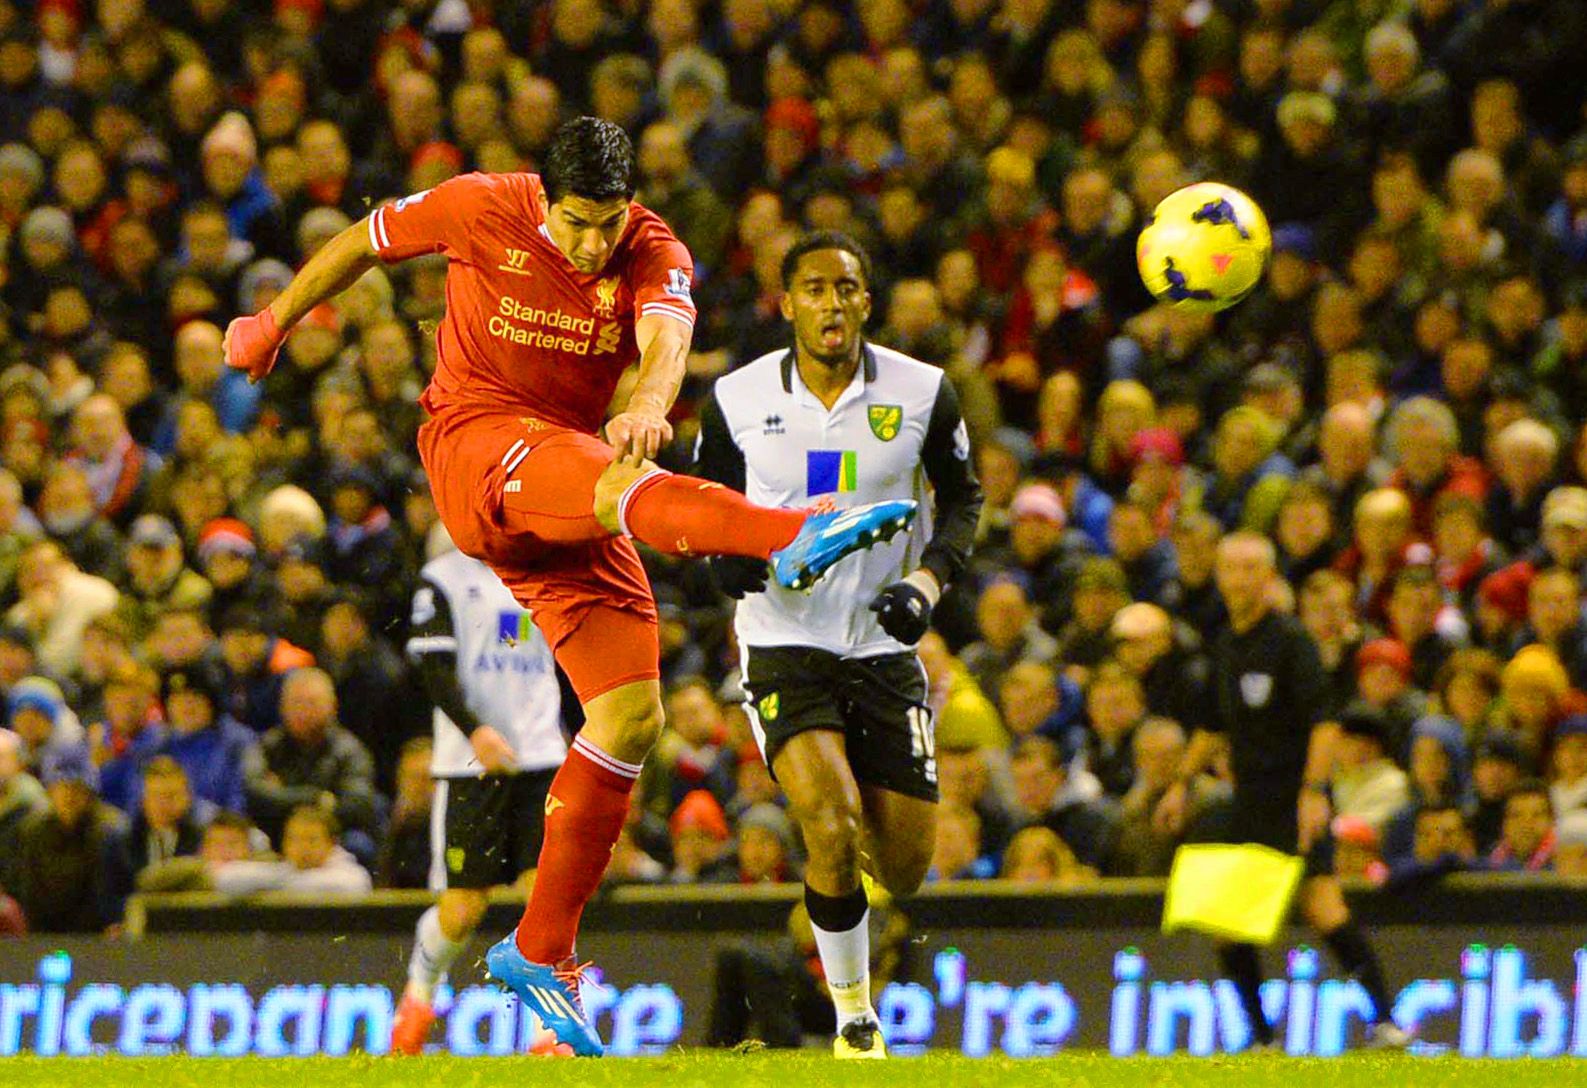 Liverpool v Norwich City - Luis Suarez scores